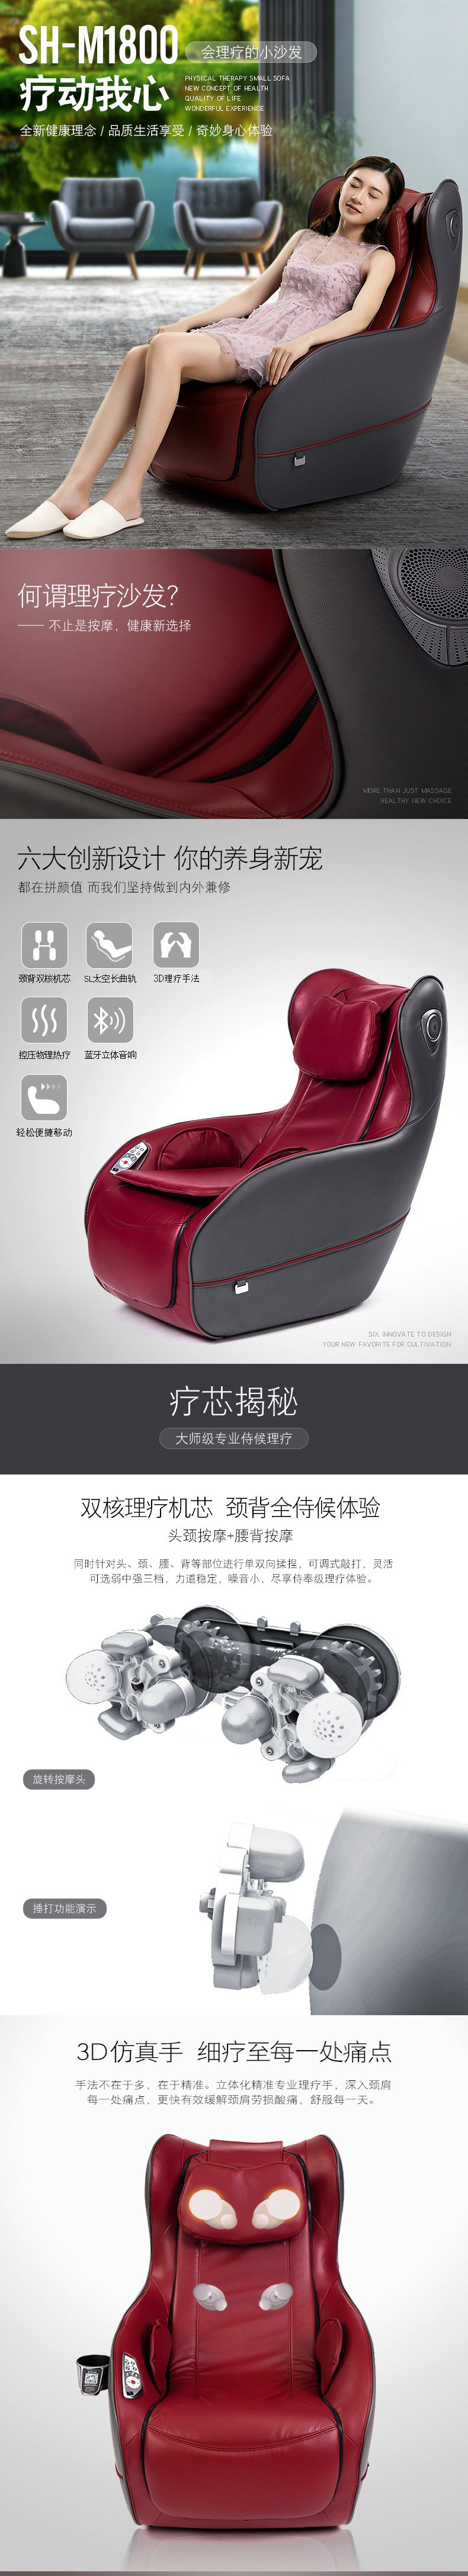 舒华 按摩椅SH-M1800 家用豪华按摩椅颈部腰部全身多功能休闲按摩沙发